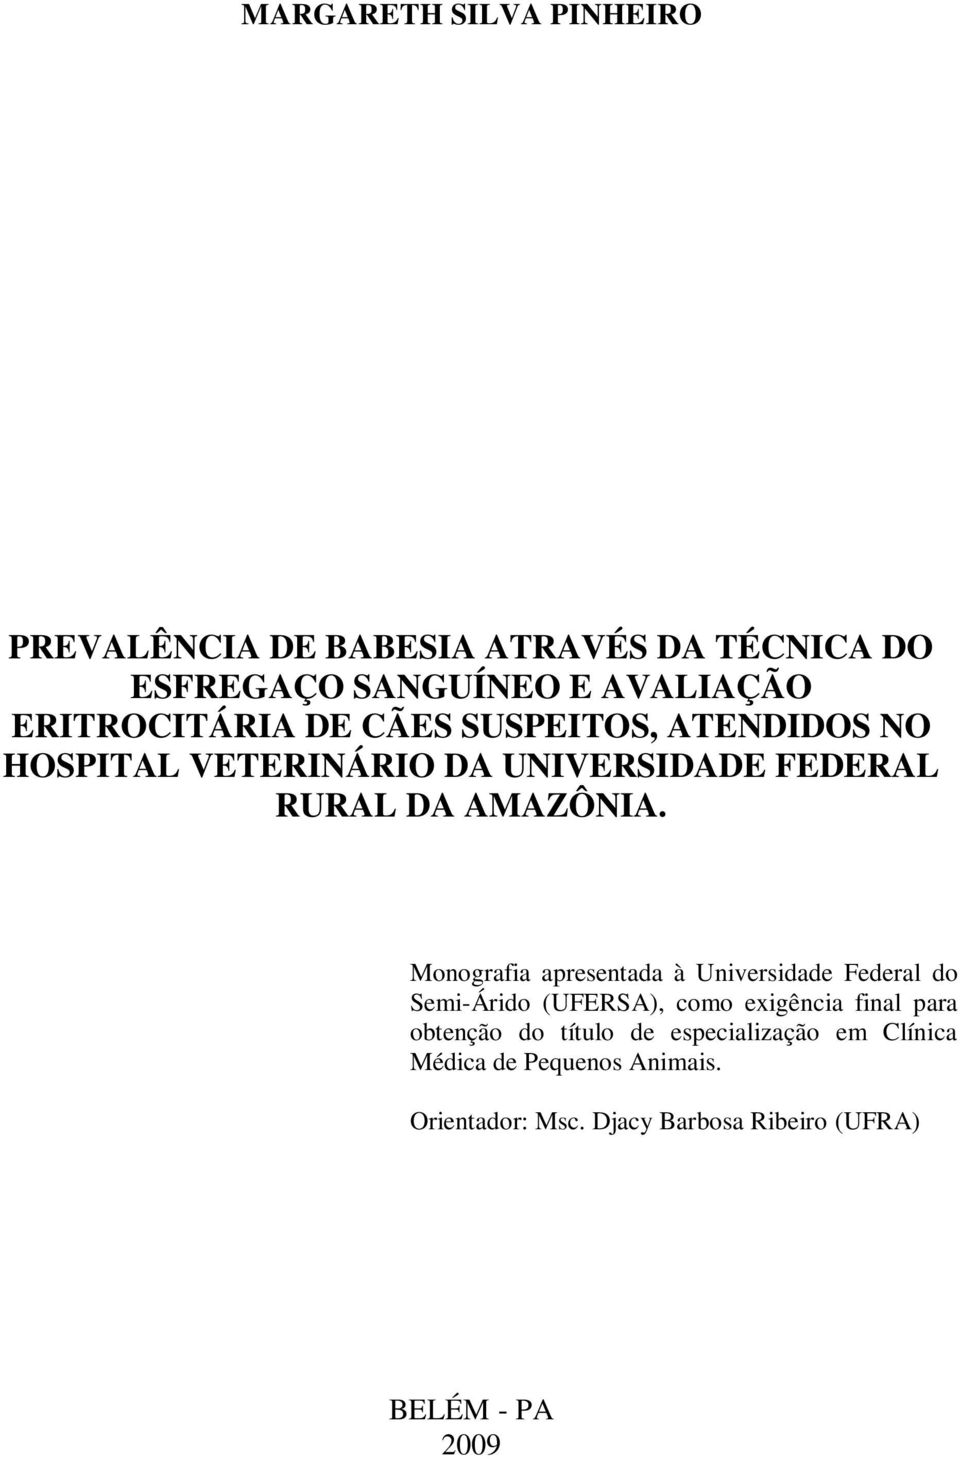 Monografia apresentada à Universidade Federal do Semi-Árido (UFERSA), como exigência final para obtenção do